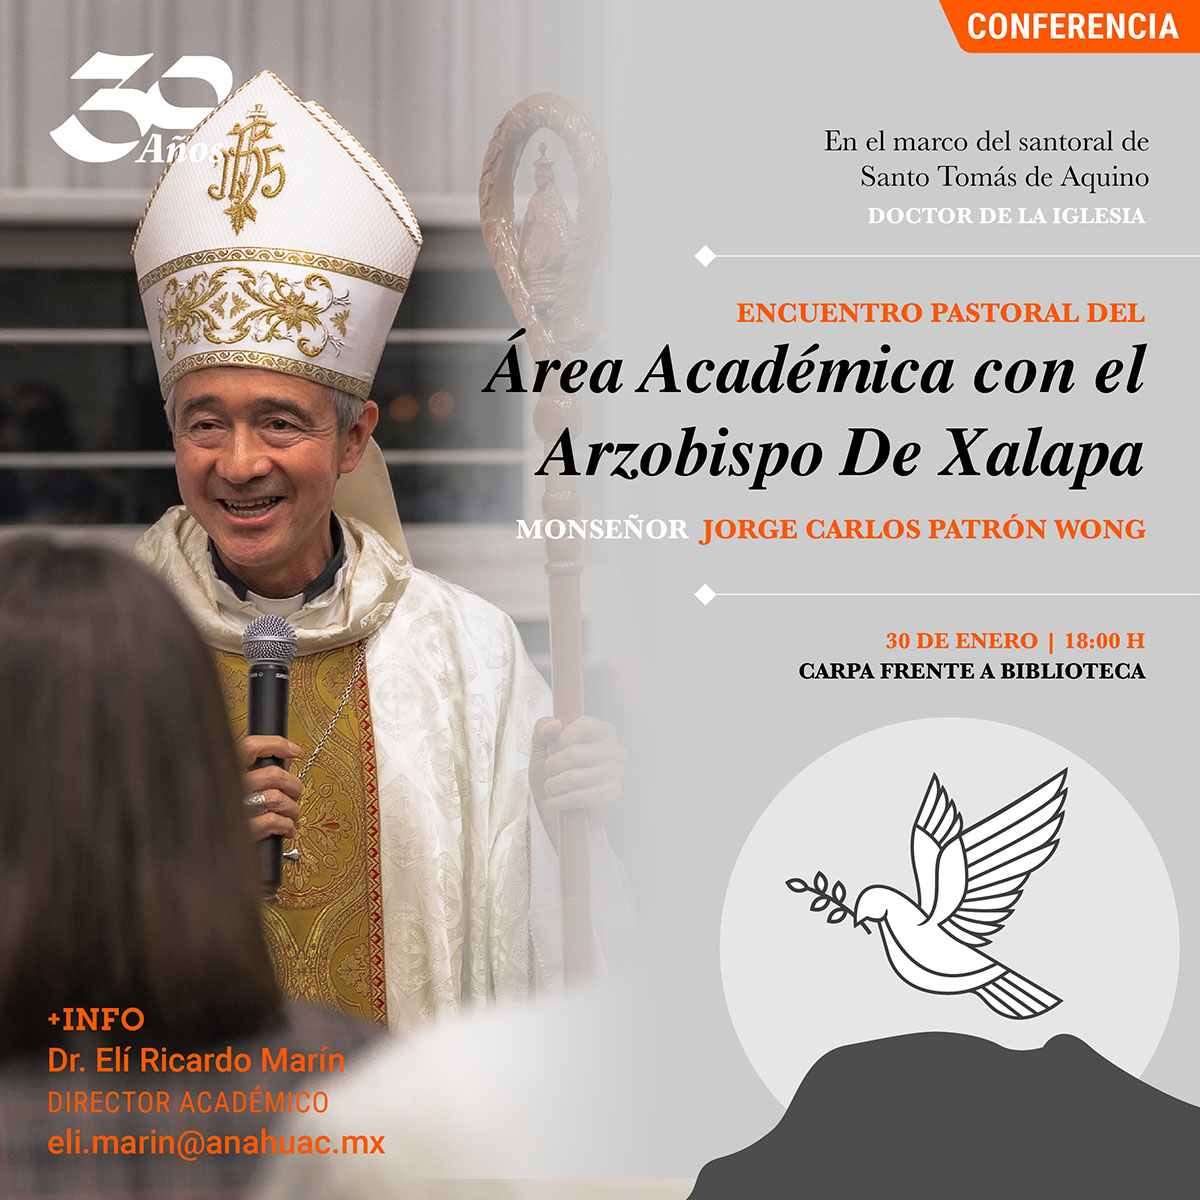 Encuentro Pastoral del Área Académica con el Arzobispo de Xalapa